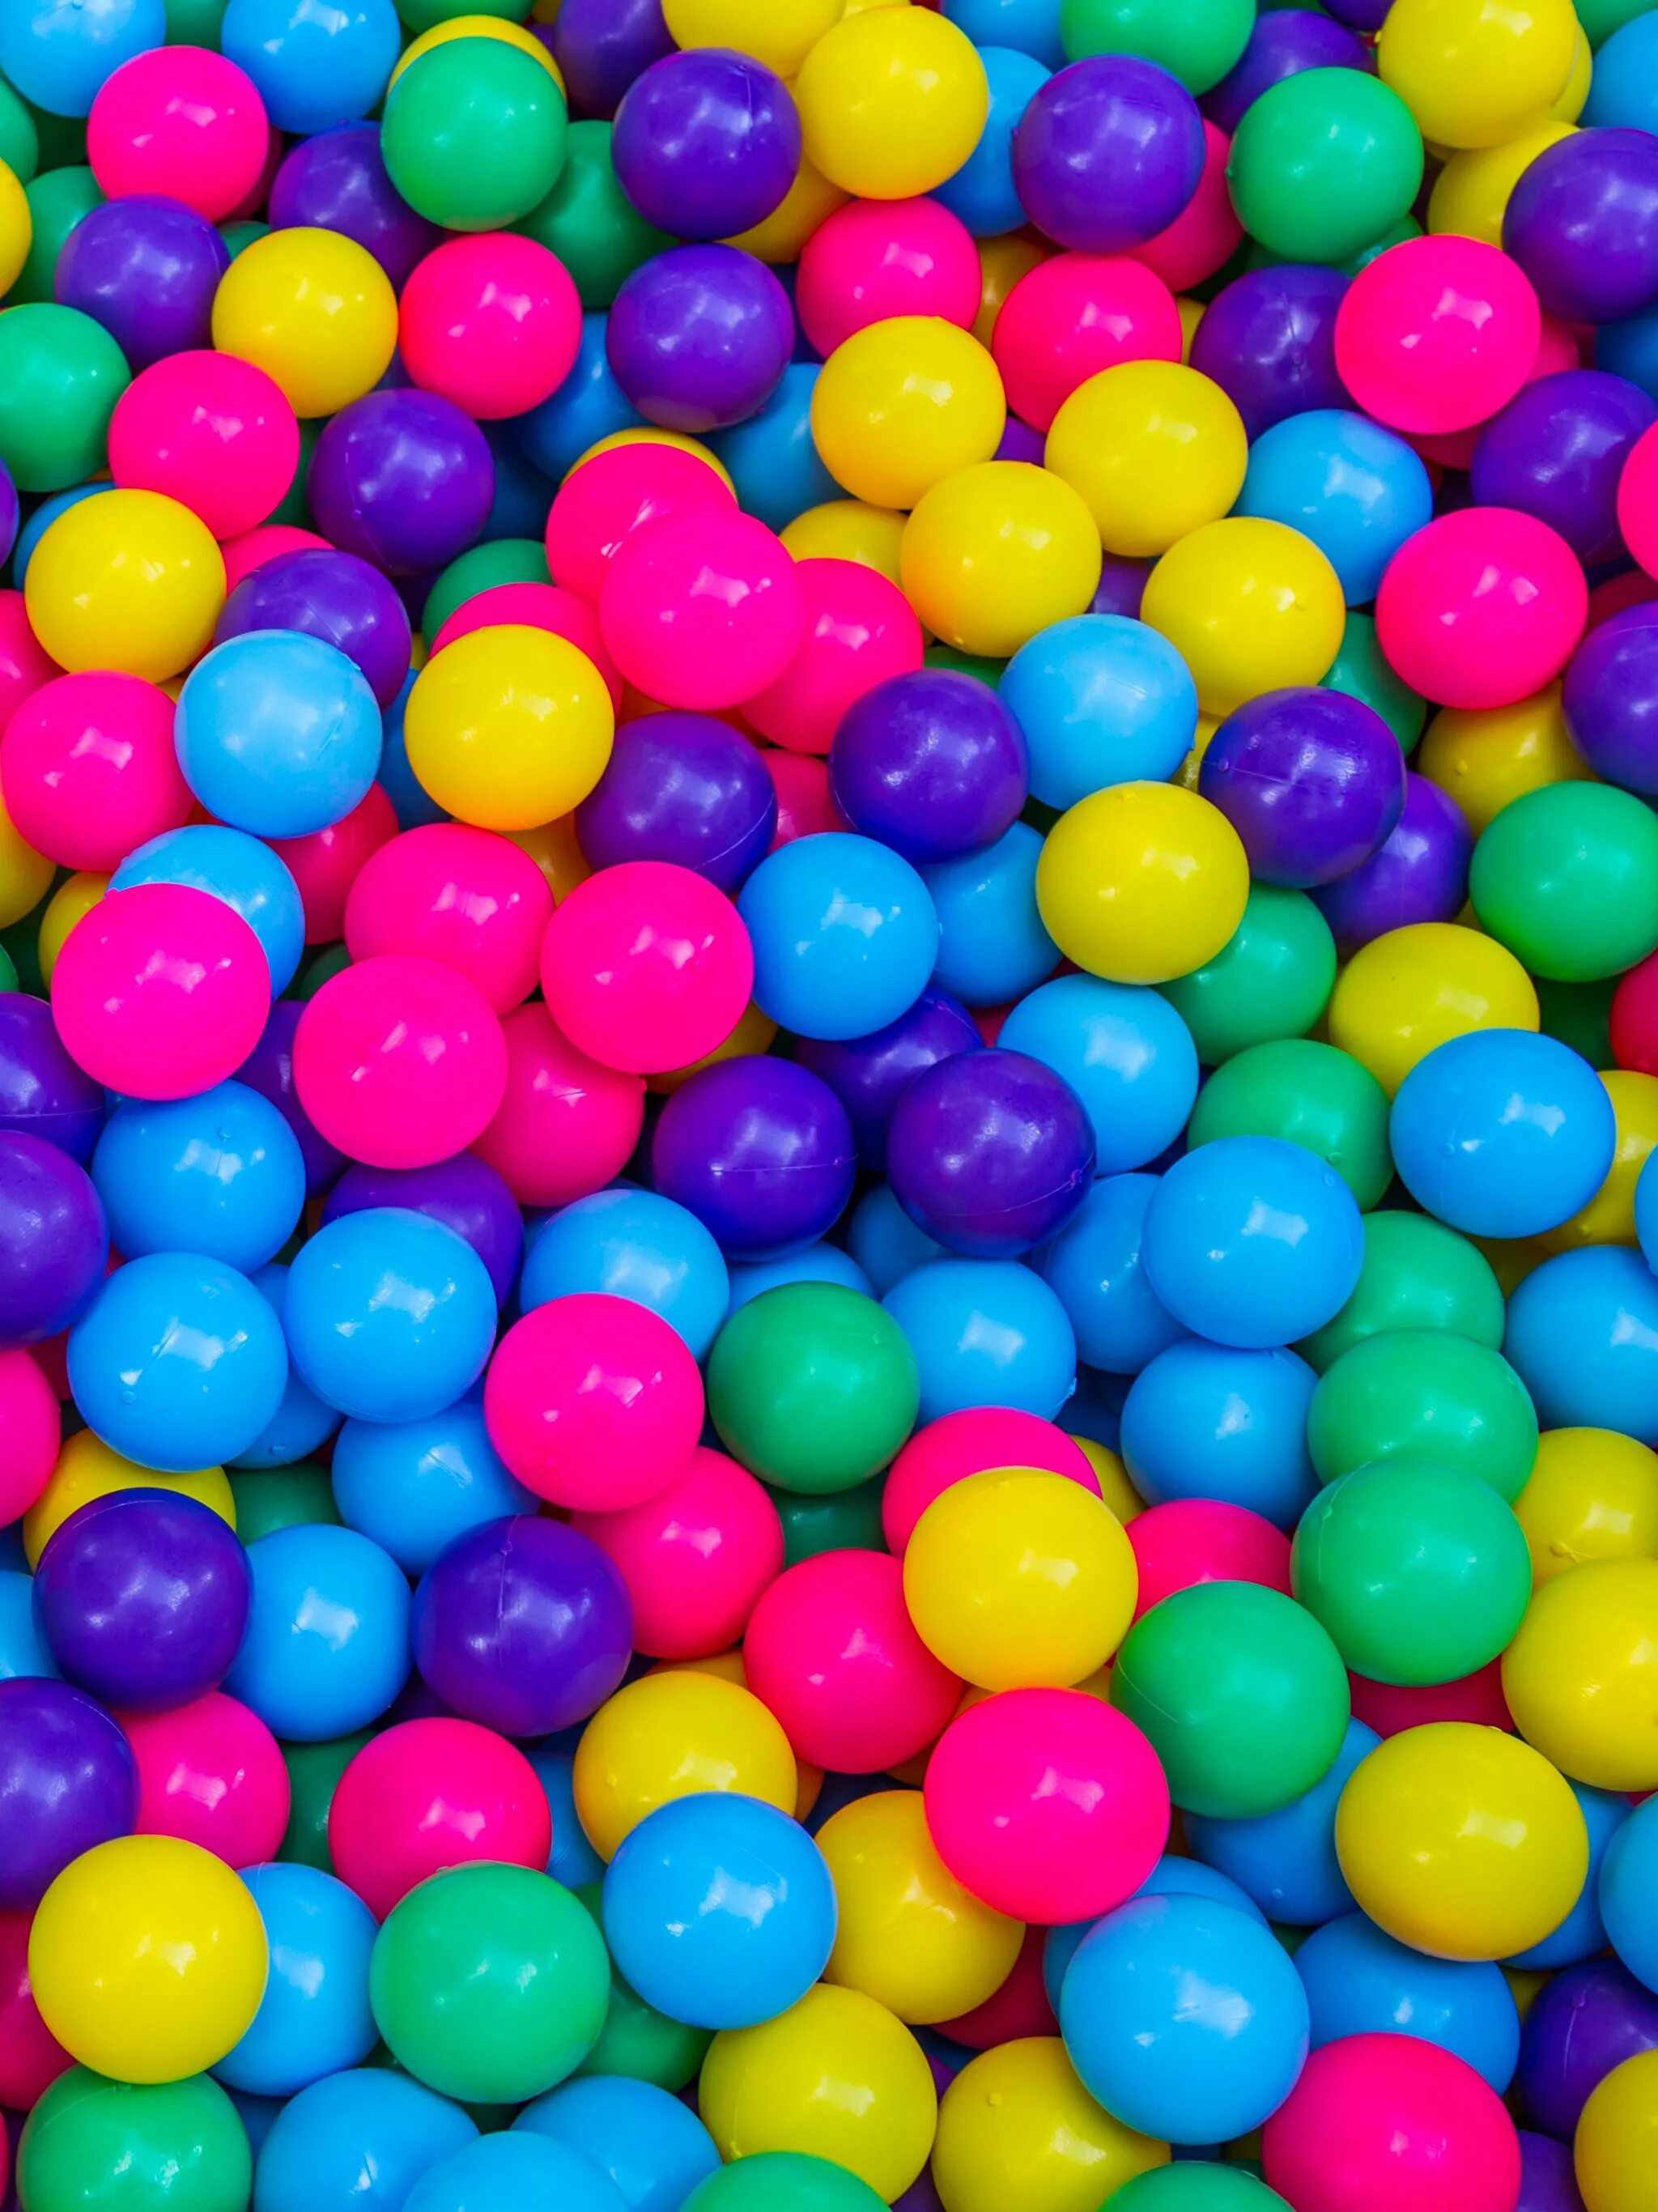 Номер телефона шар. Разноцветные шарики. Красивые разноцветные шарики. Фон шарики. Фон с разноцветными шарами.